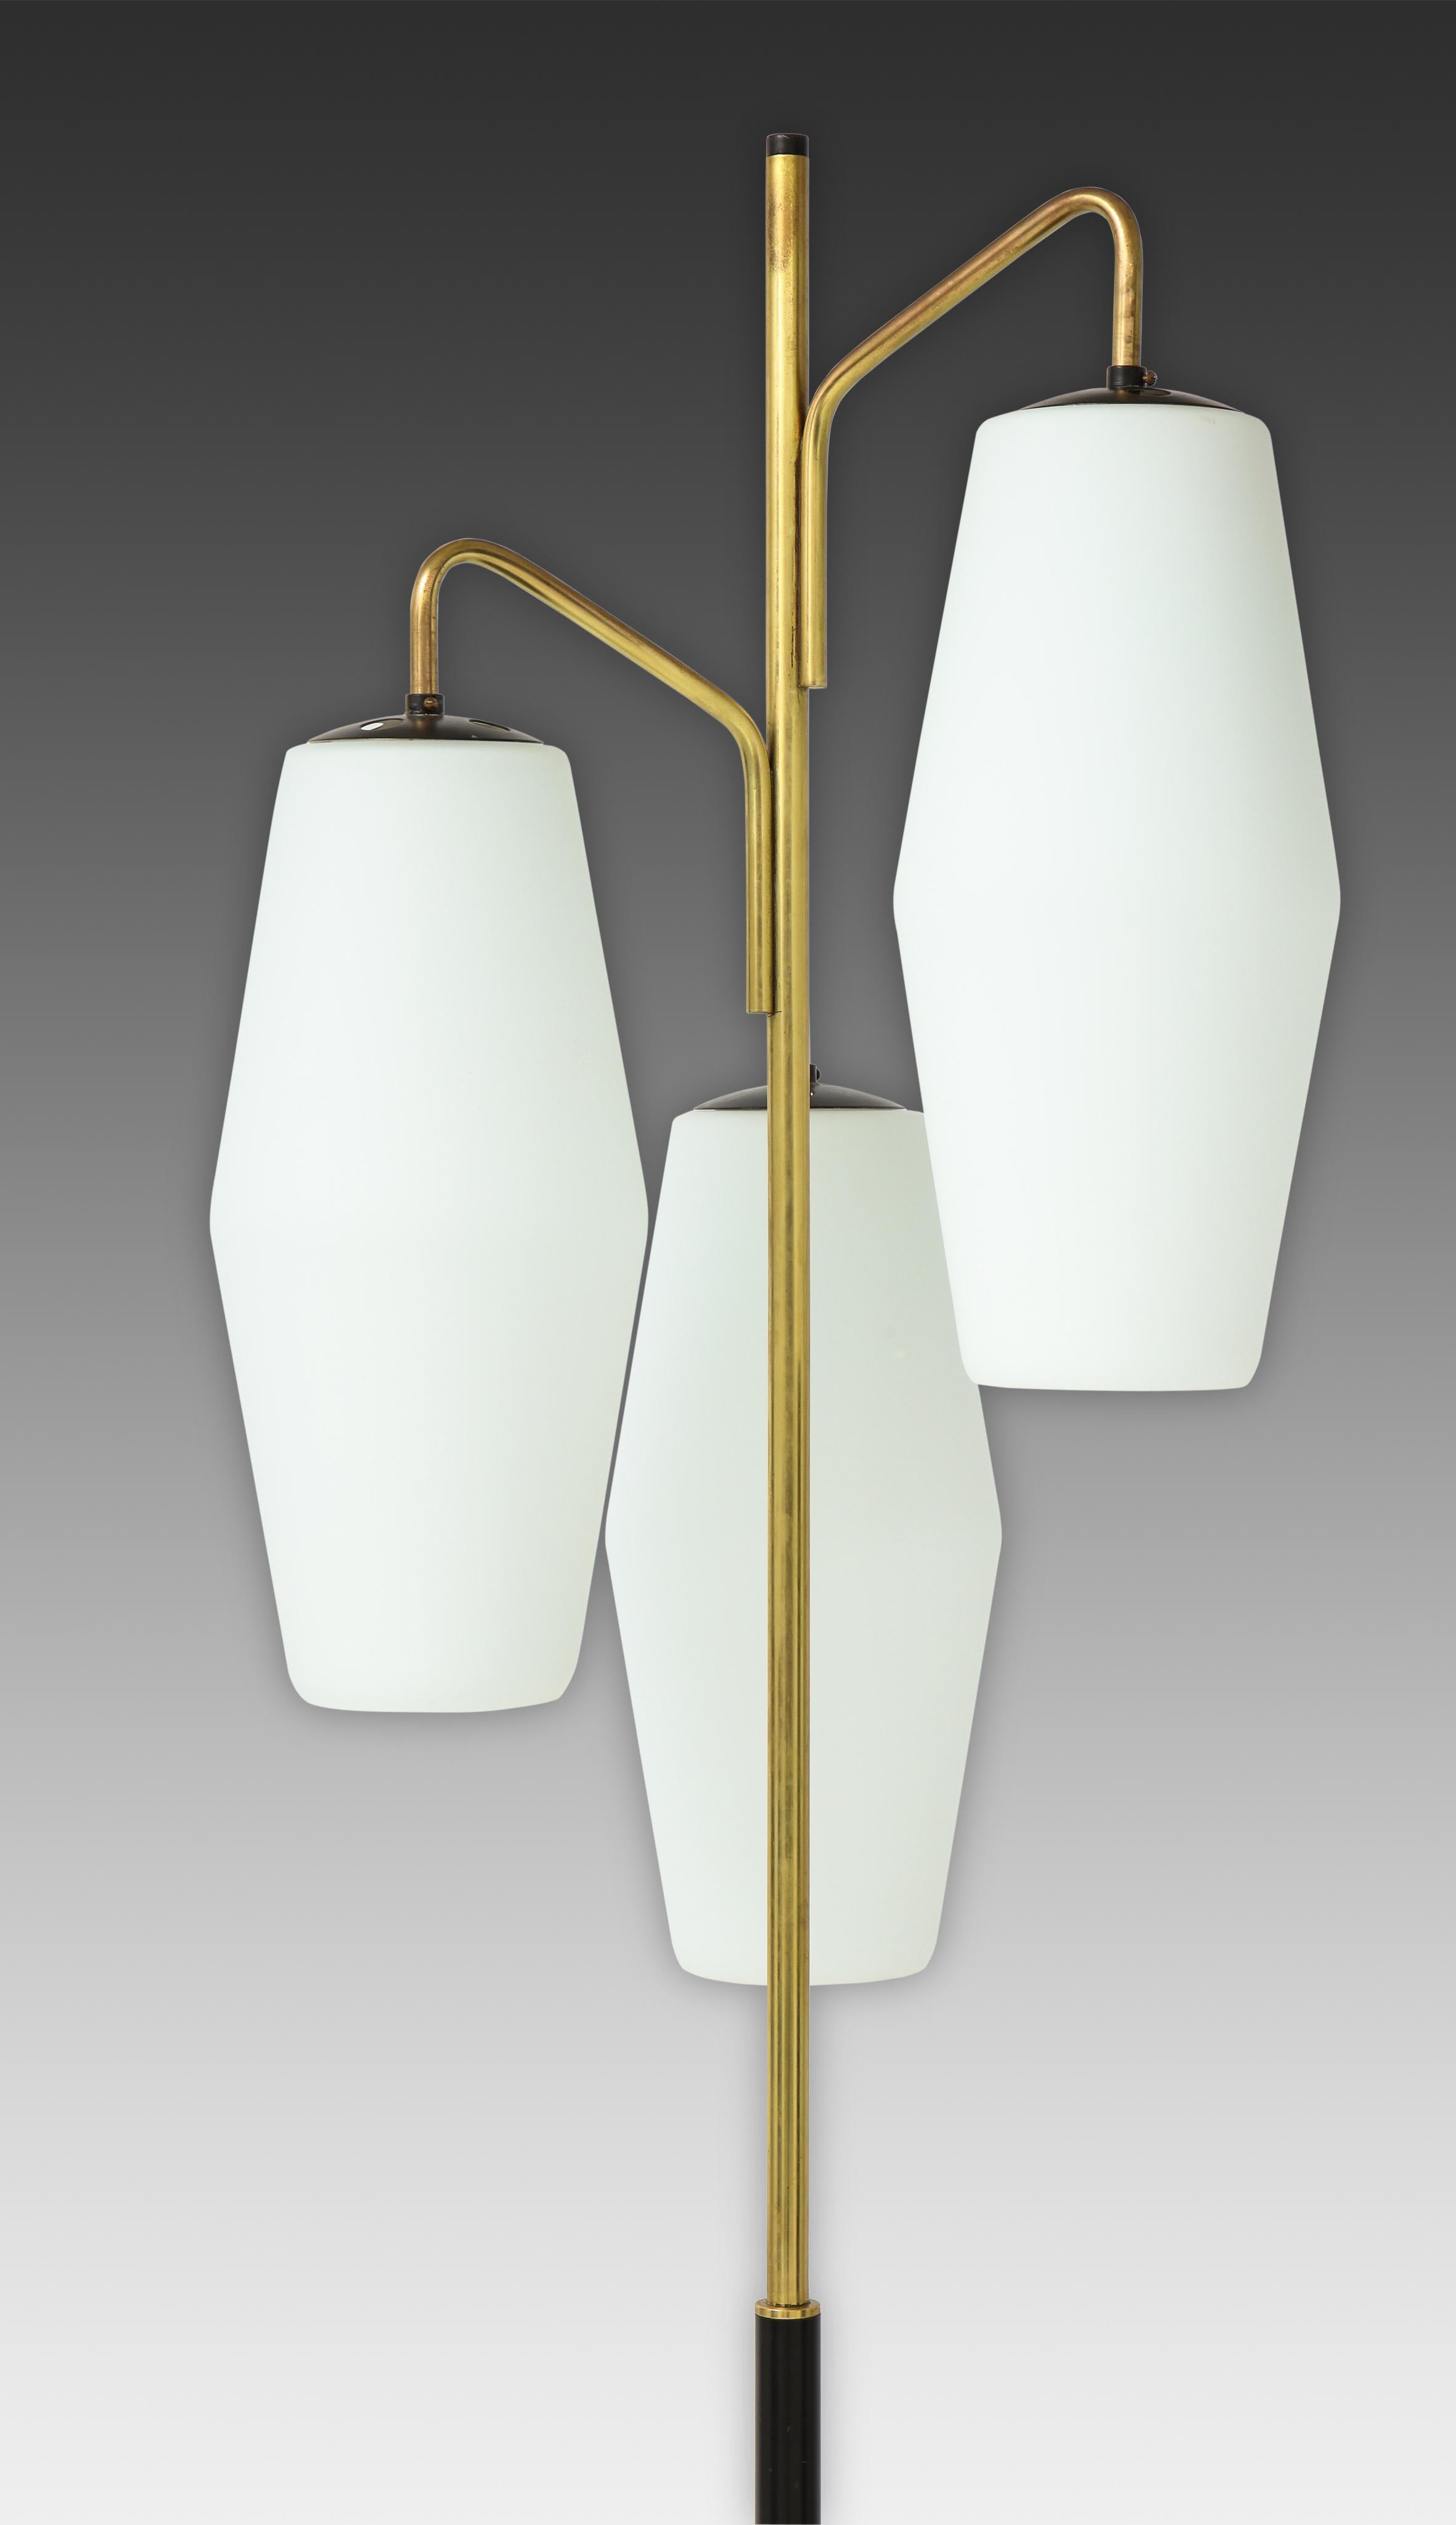 Frosted Stiilnovo Floor Lamp Model 4052